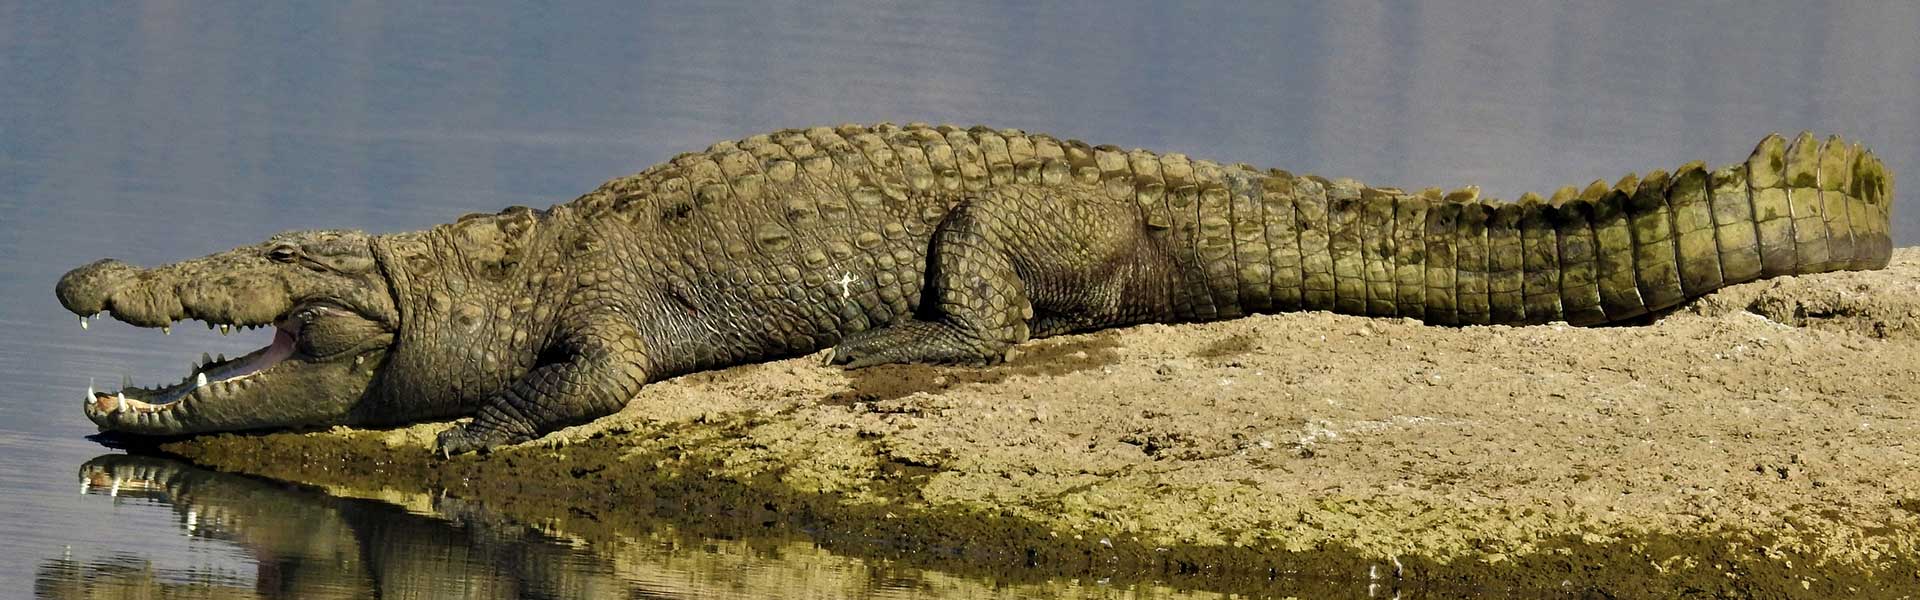 Crocodile Watching at Varawal